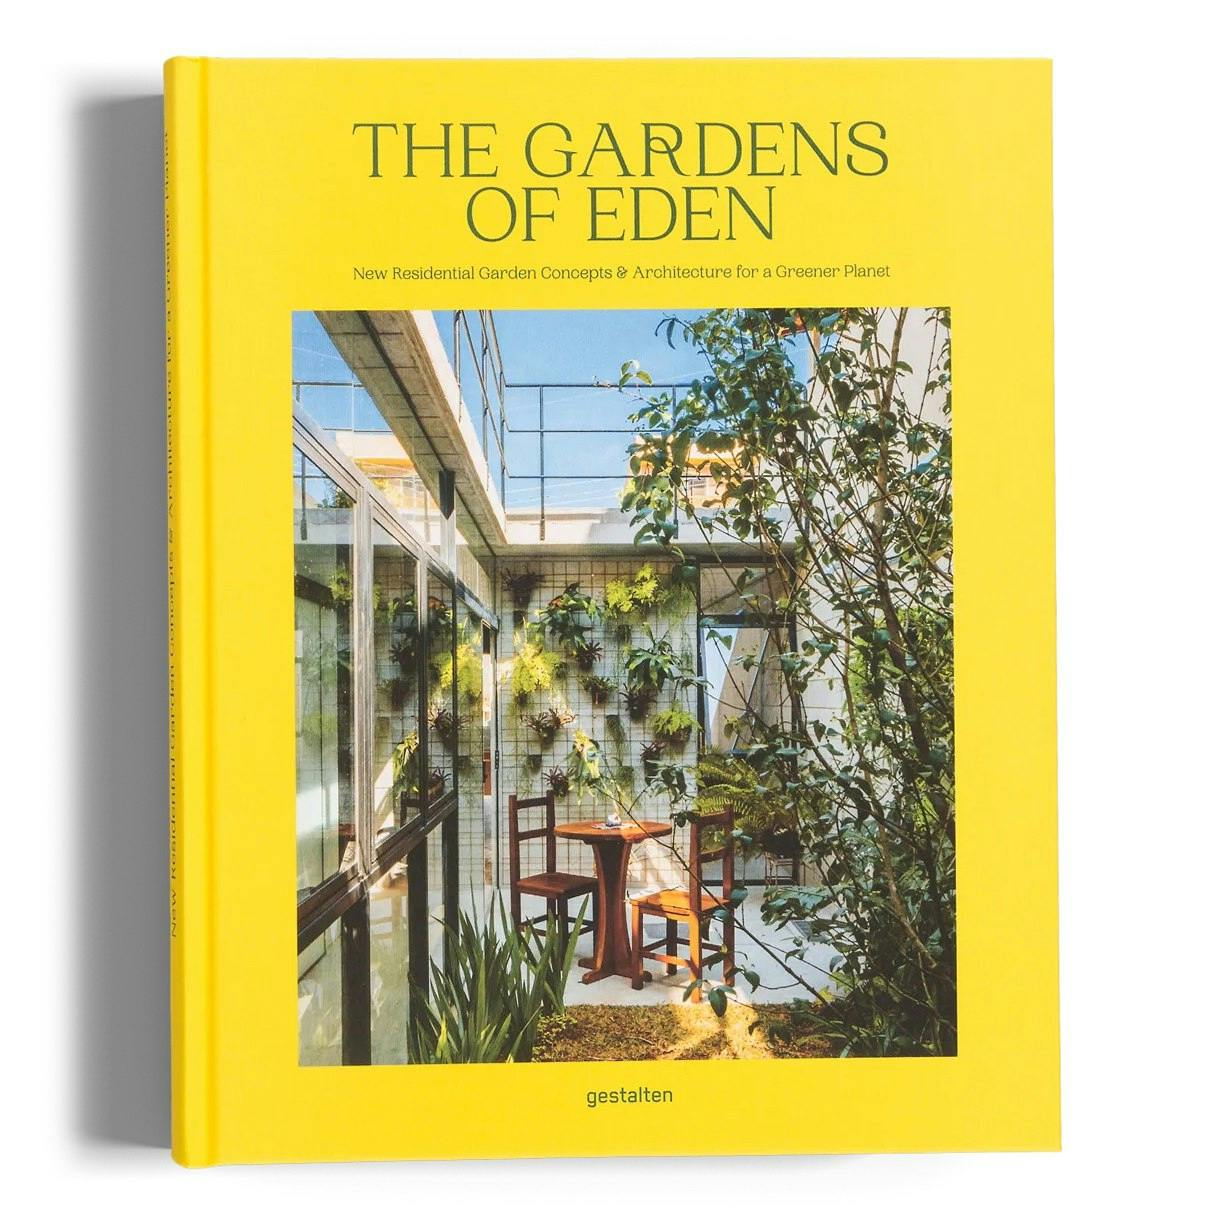 The Gardens of Eden - Coffee Table Book